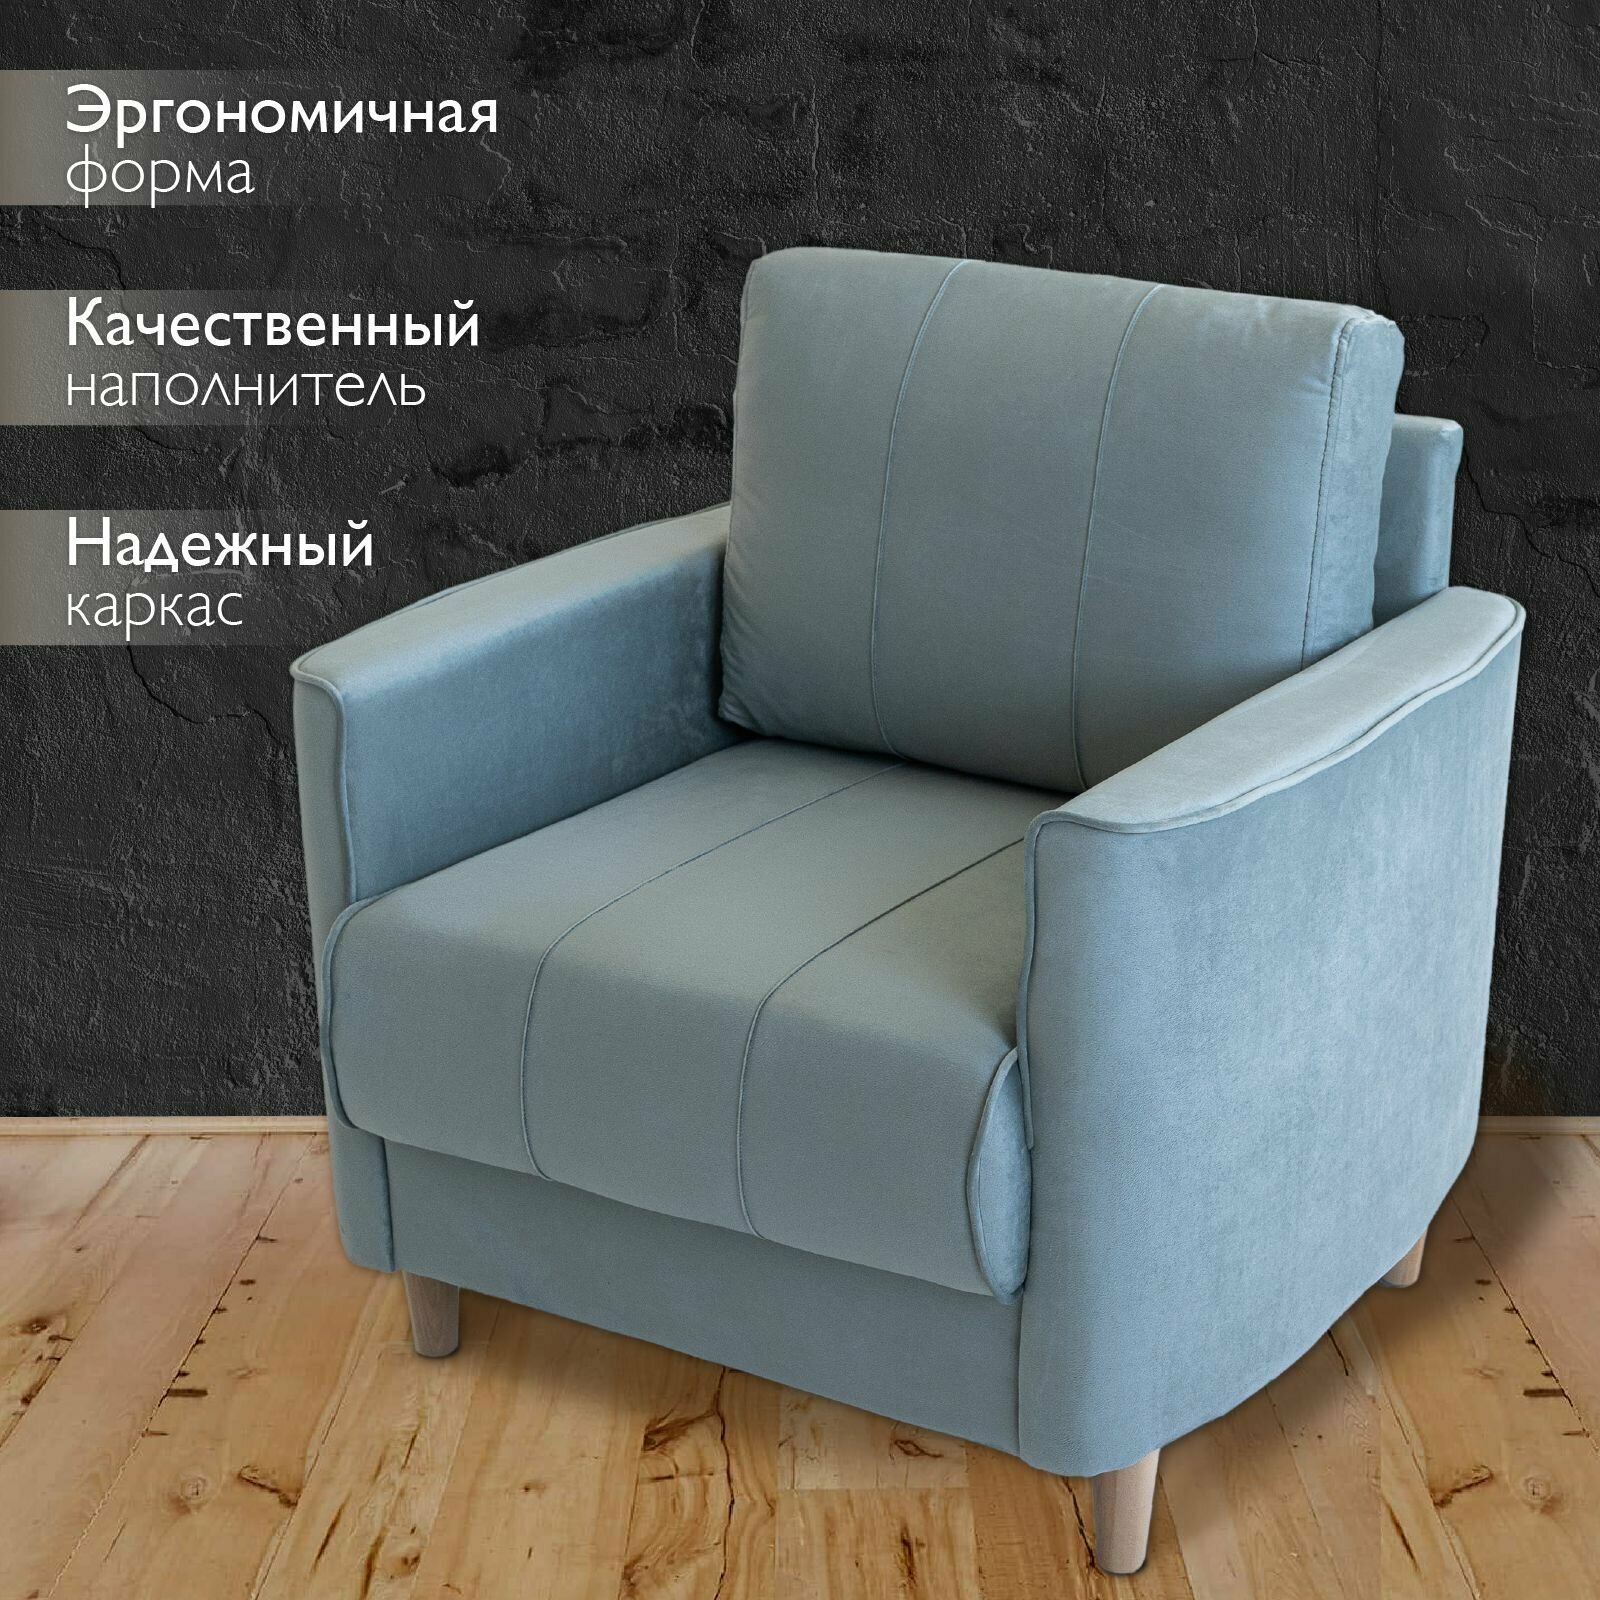 Кресло мягкое интерьерное для отдыха Марсель, на деревянных ножках, офисное кресло, для дома, гостиной, для дачи, на балкон, обивка вельвет светло-серый, Ами Мебель, Беларусь